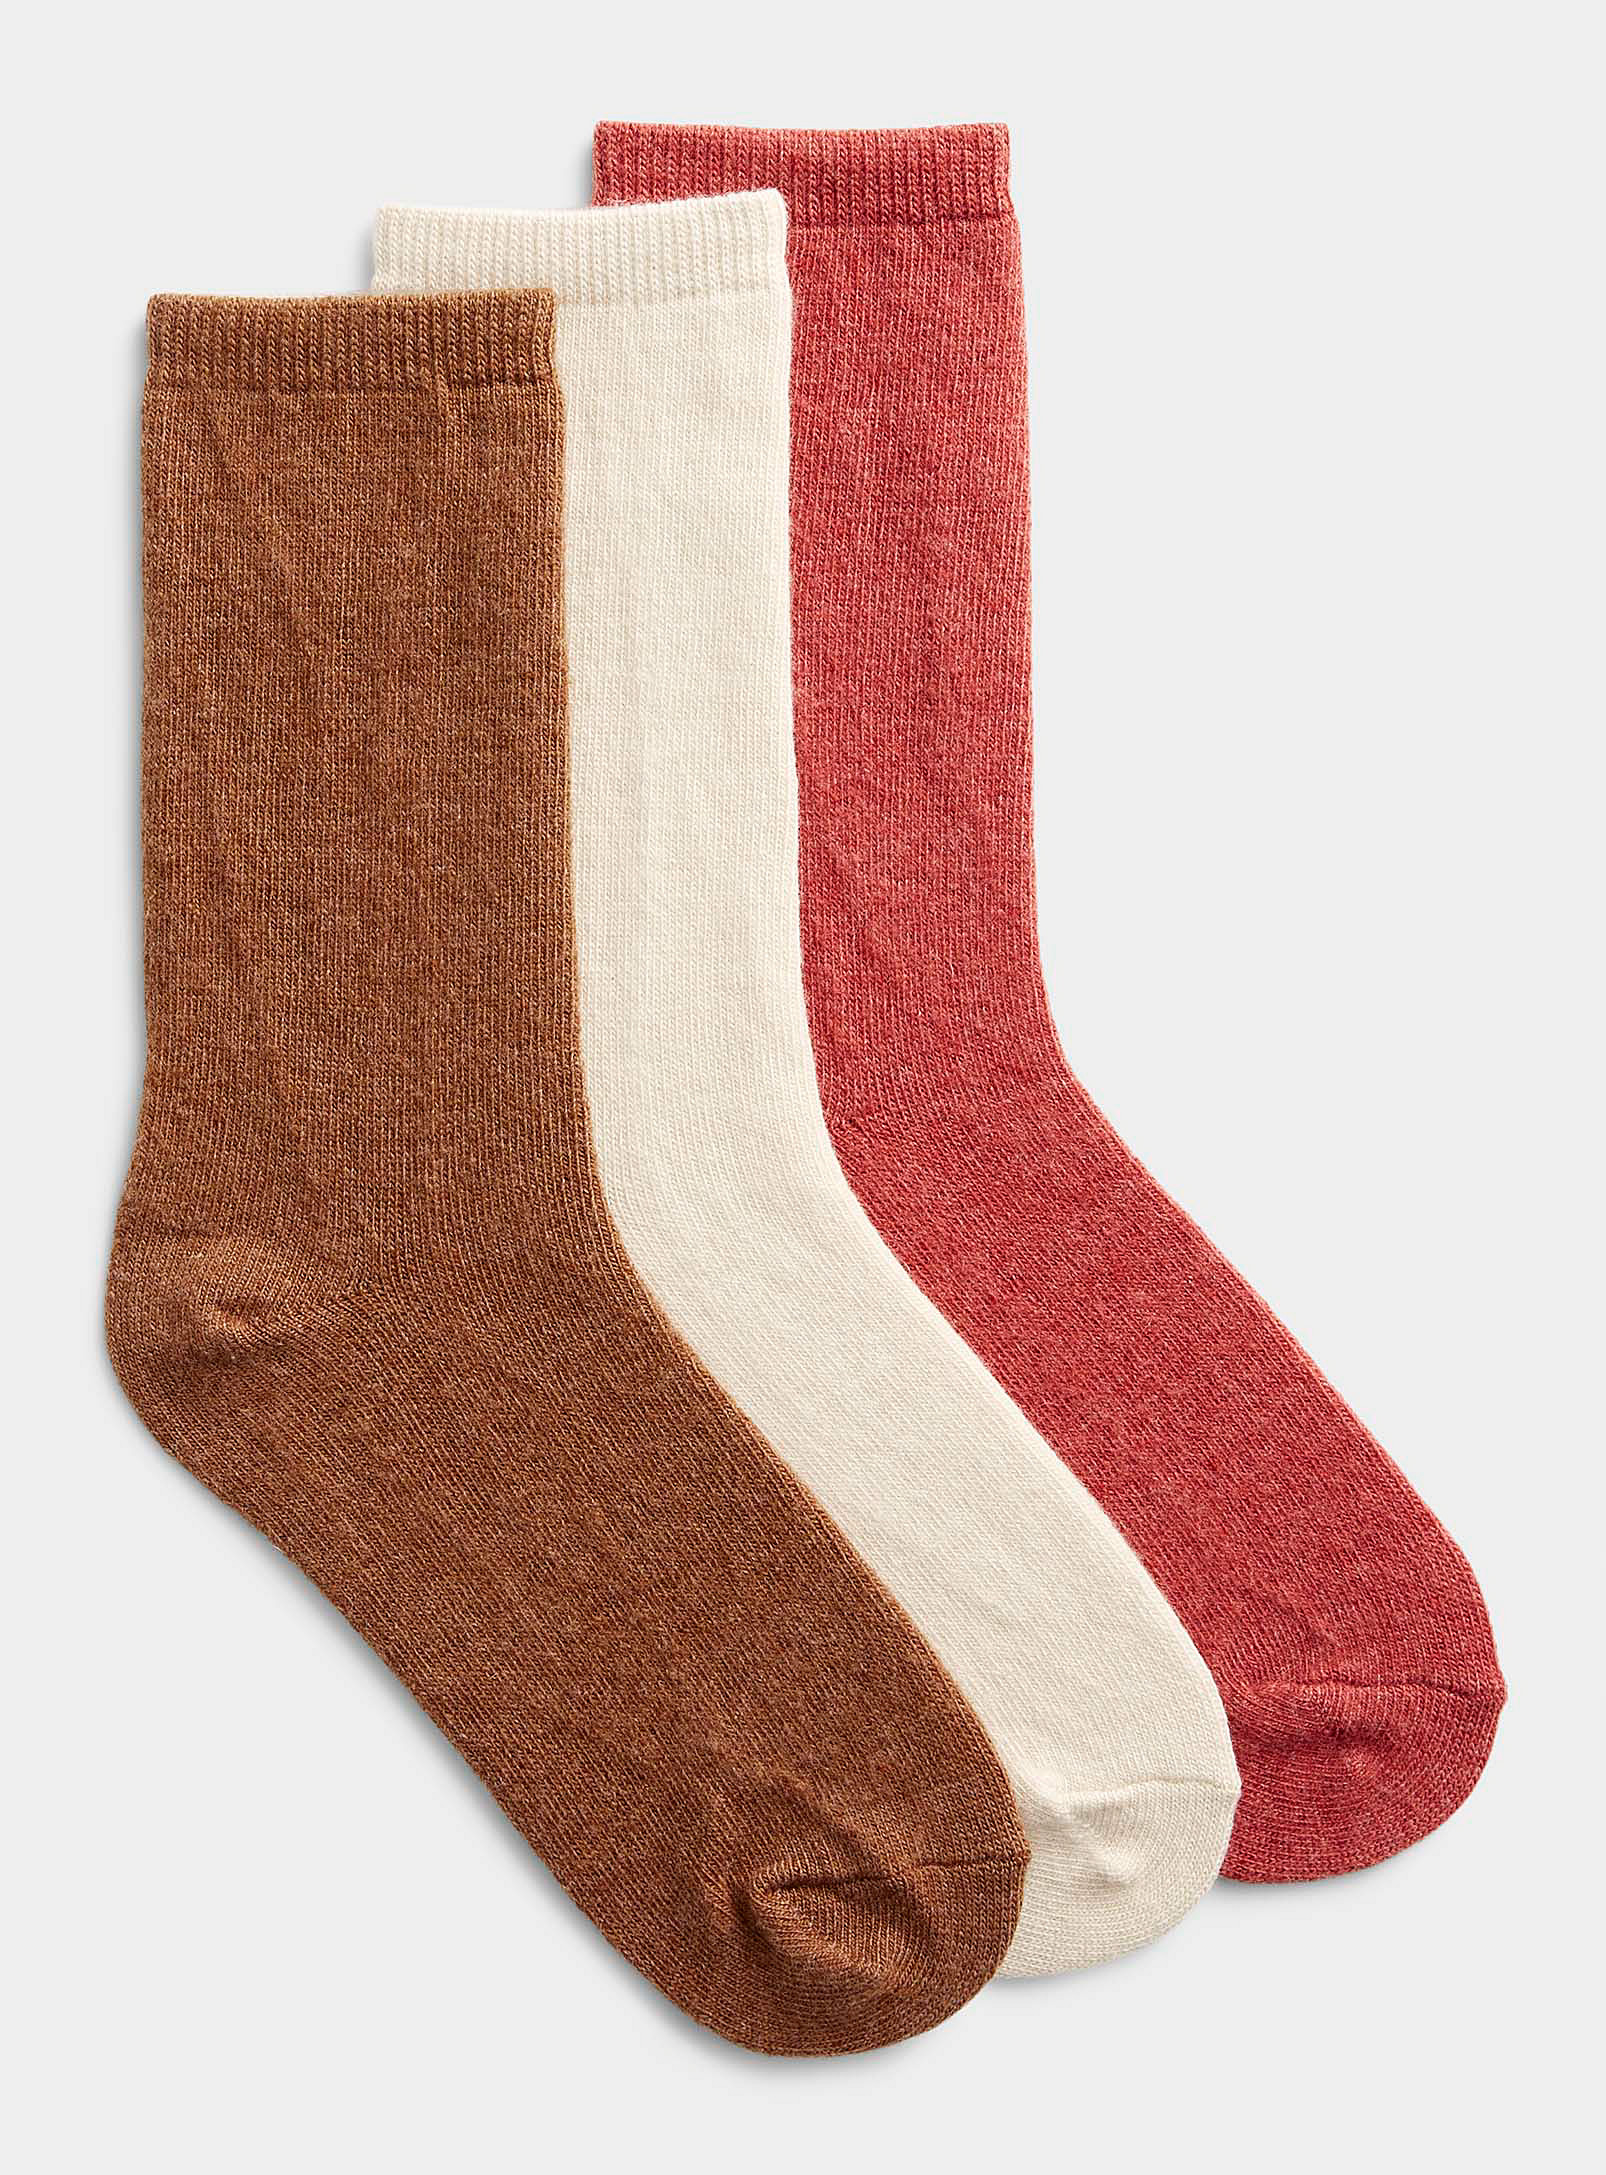 Simons - Women's Touch of wool basic socks Set of 3